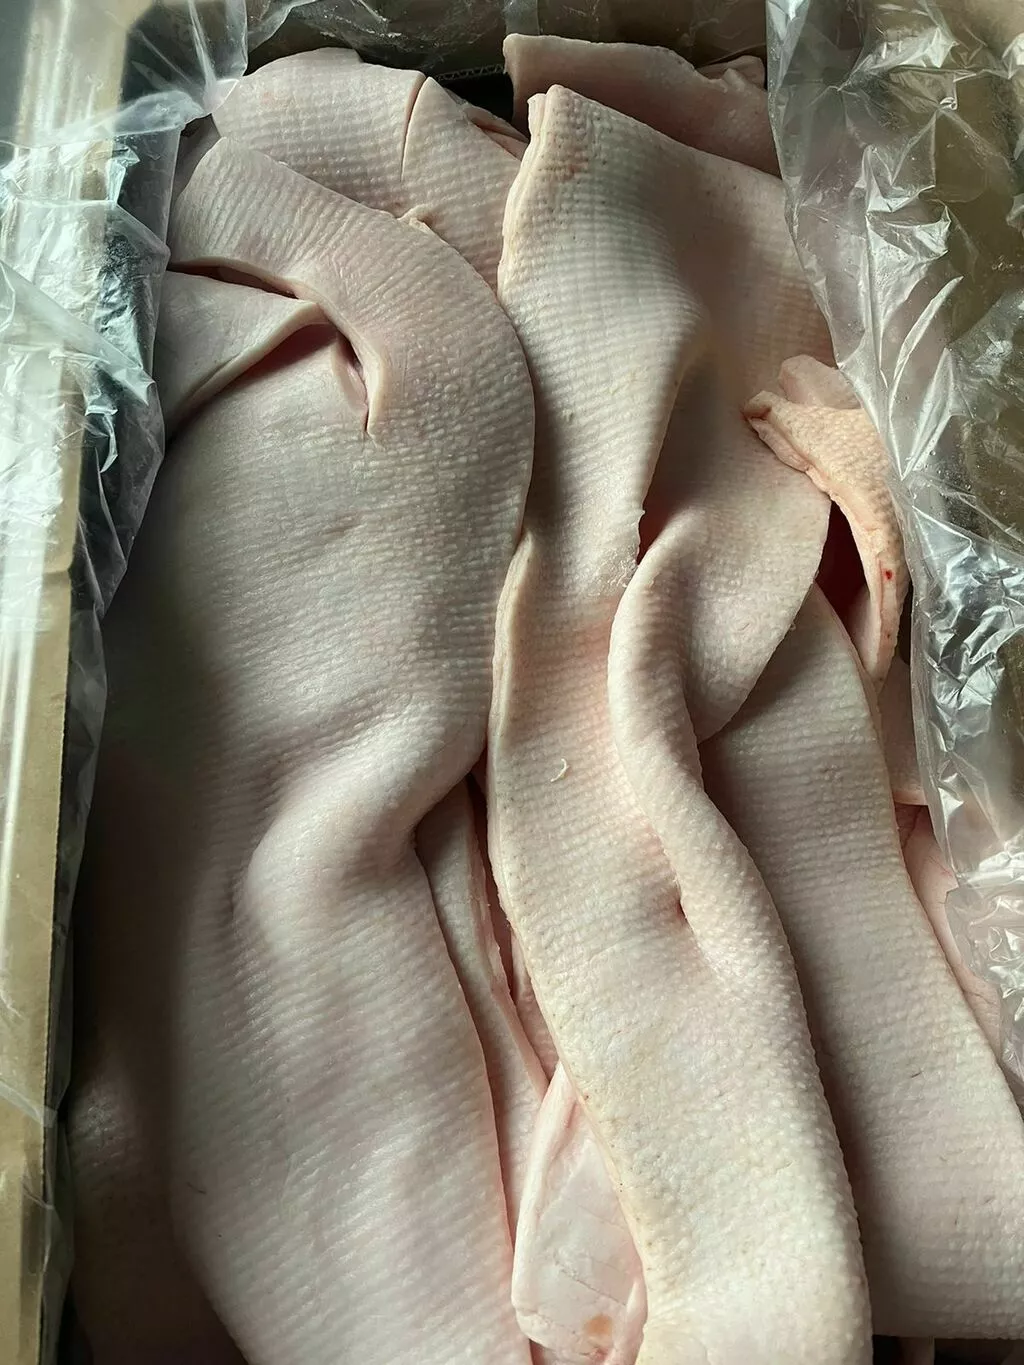 фотография продукта Шпик свиной хребтовой замороженный